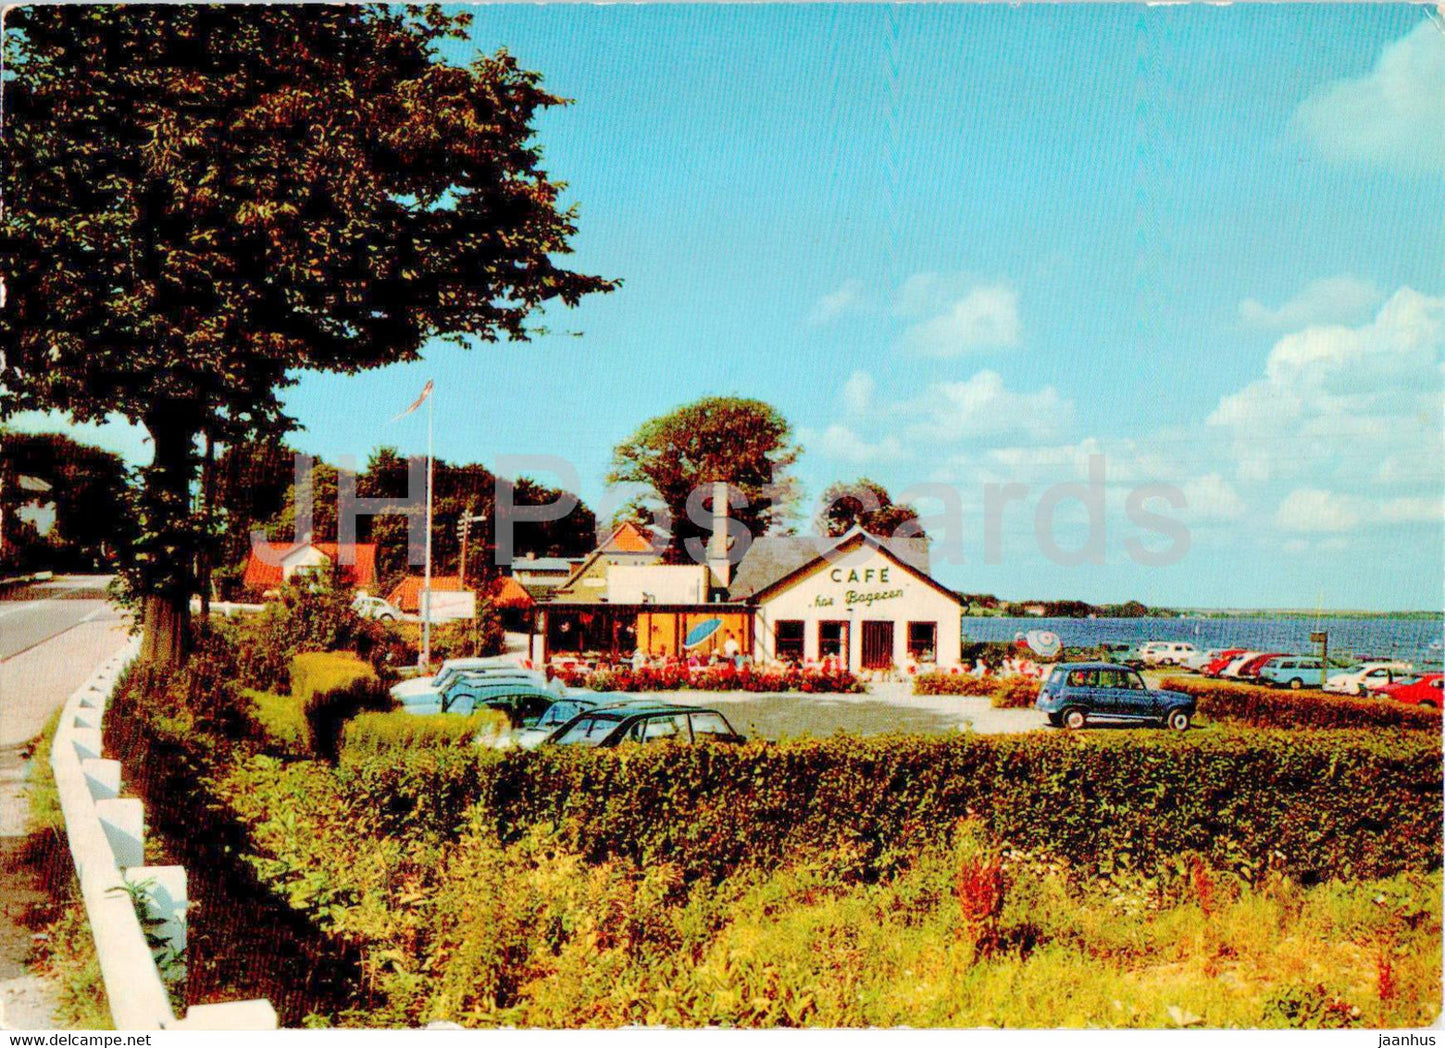 Cafe Hos Bageren - Sonderhav - 1972 - Denmark - used - JH Postcards